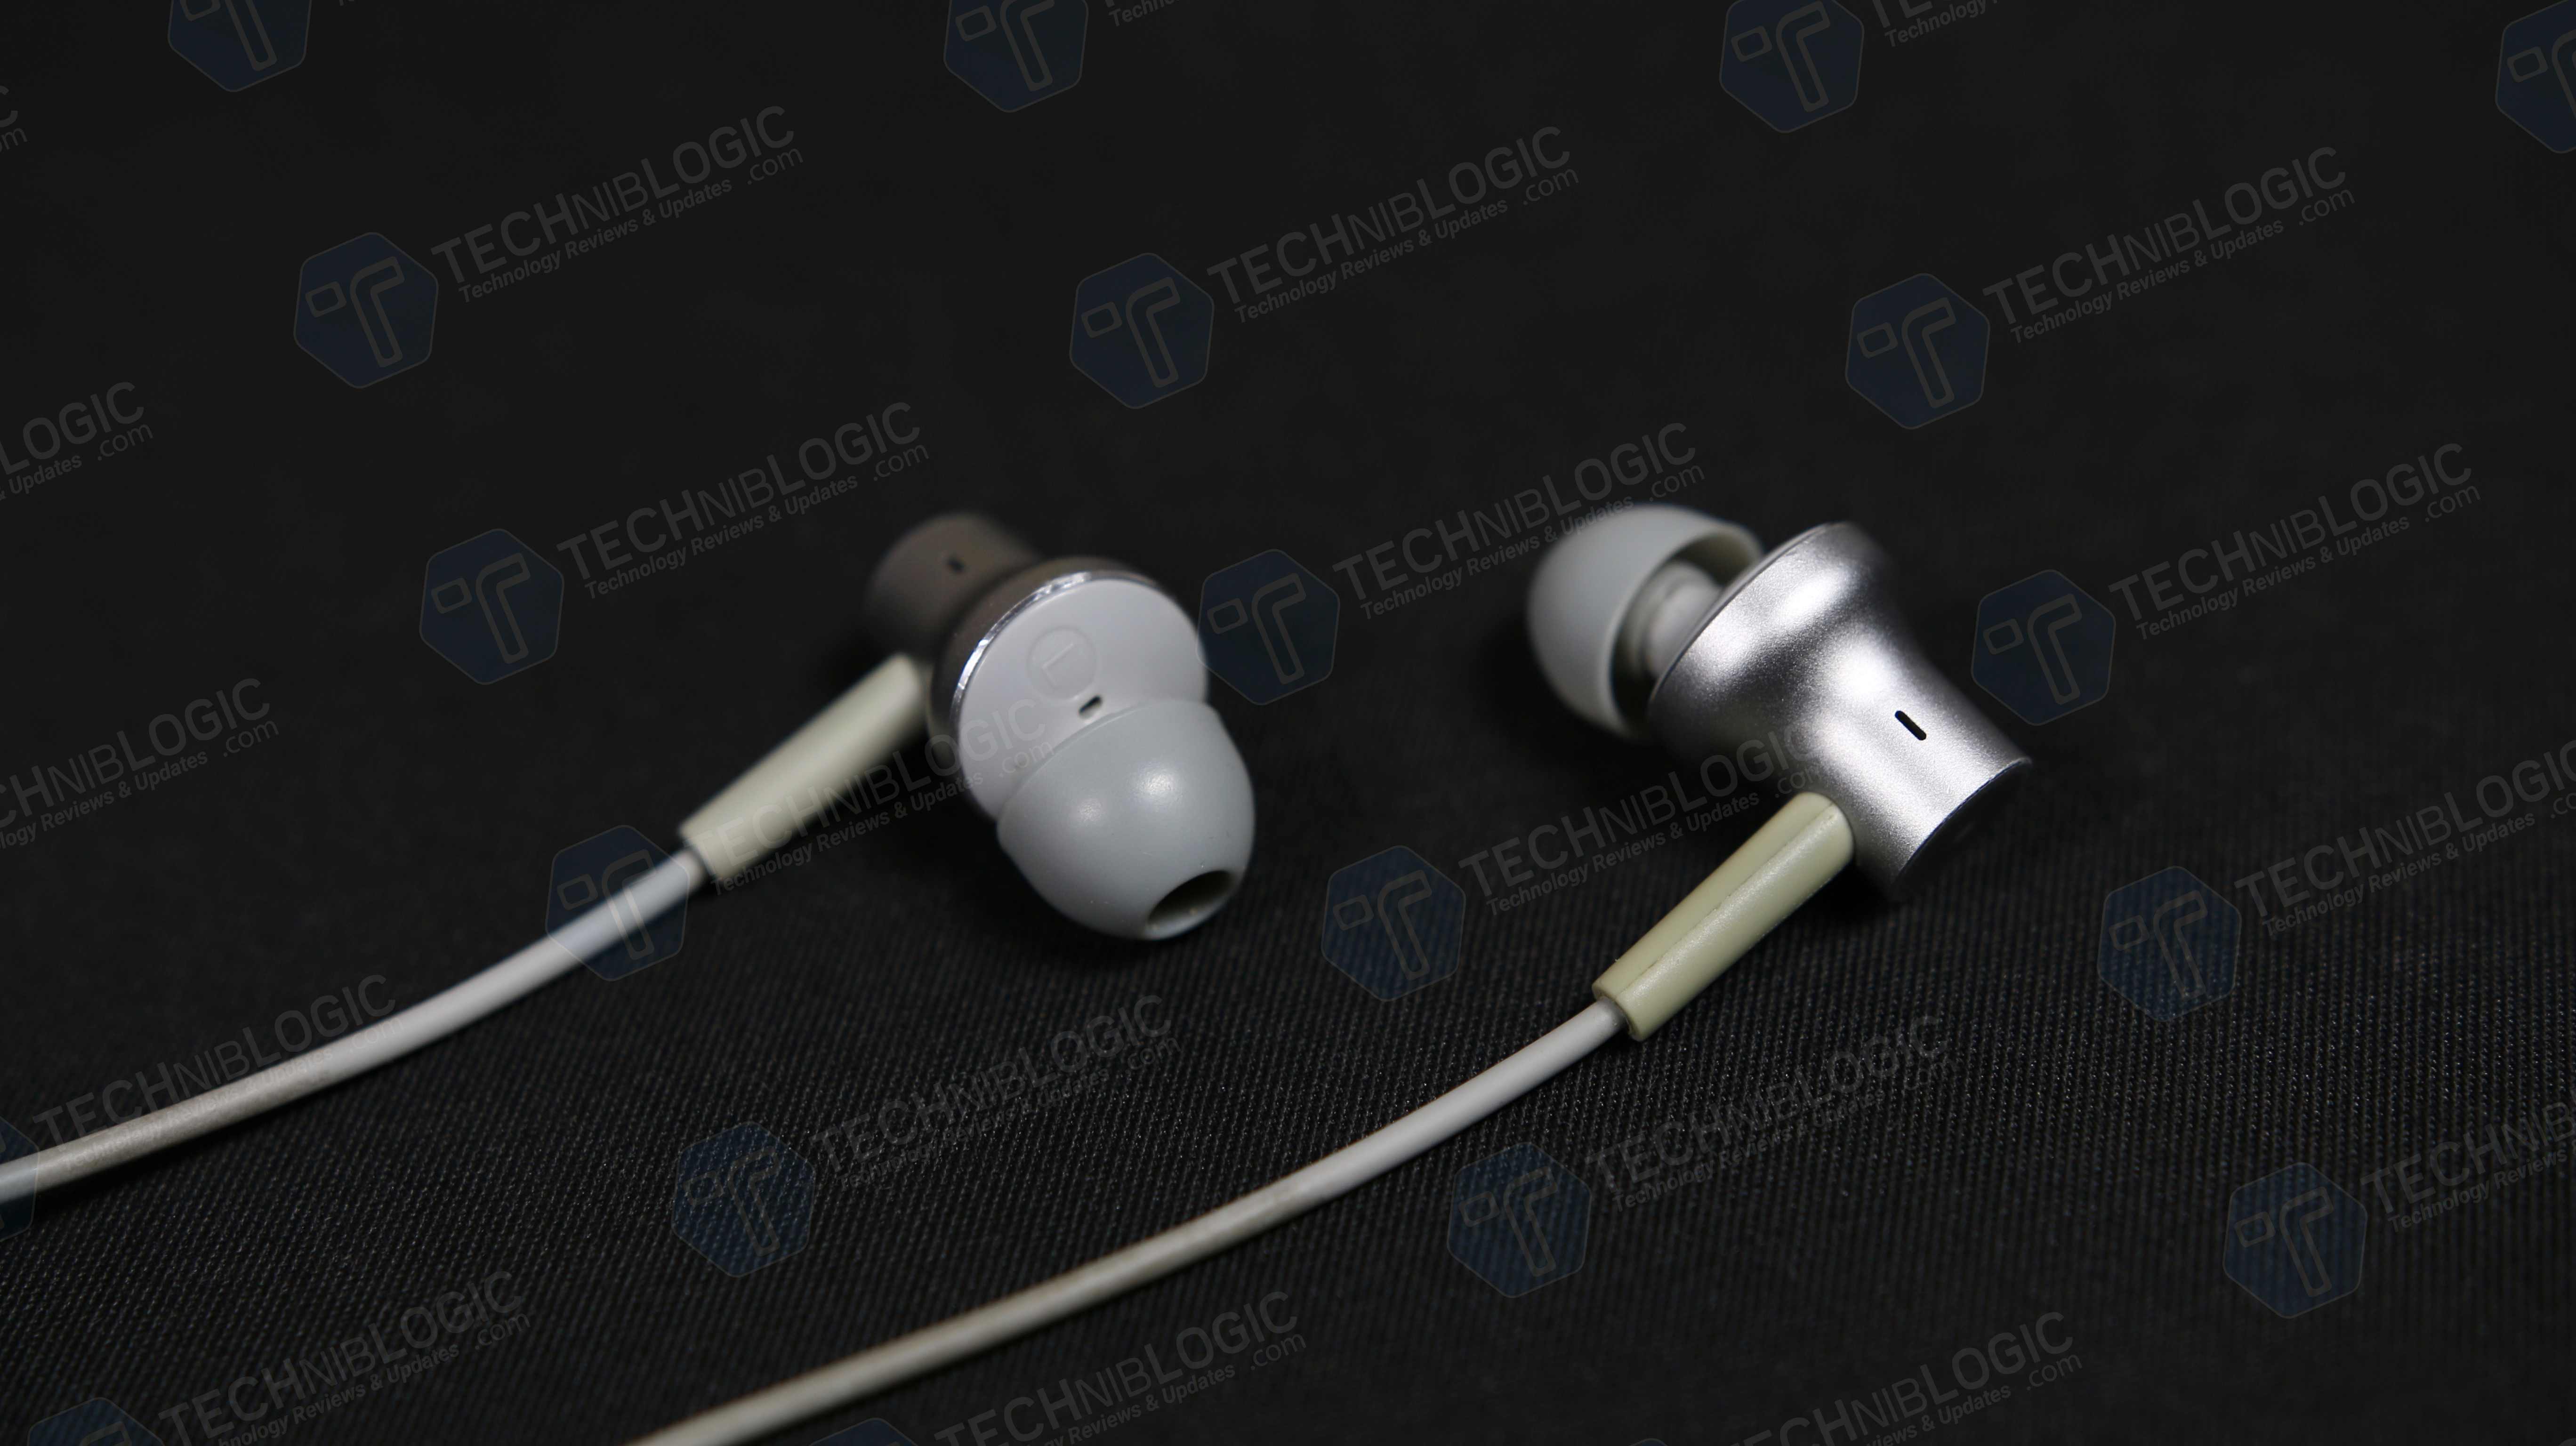 Xiaomi-Bluetooth-Neckband-Earphones8